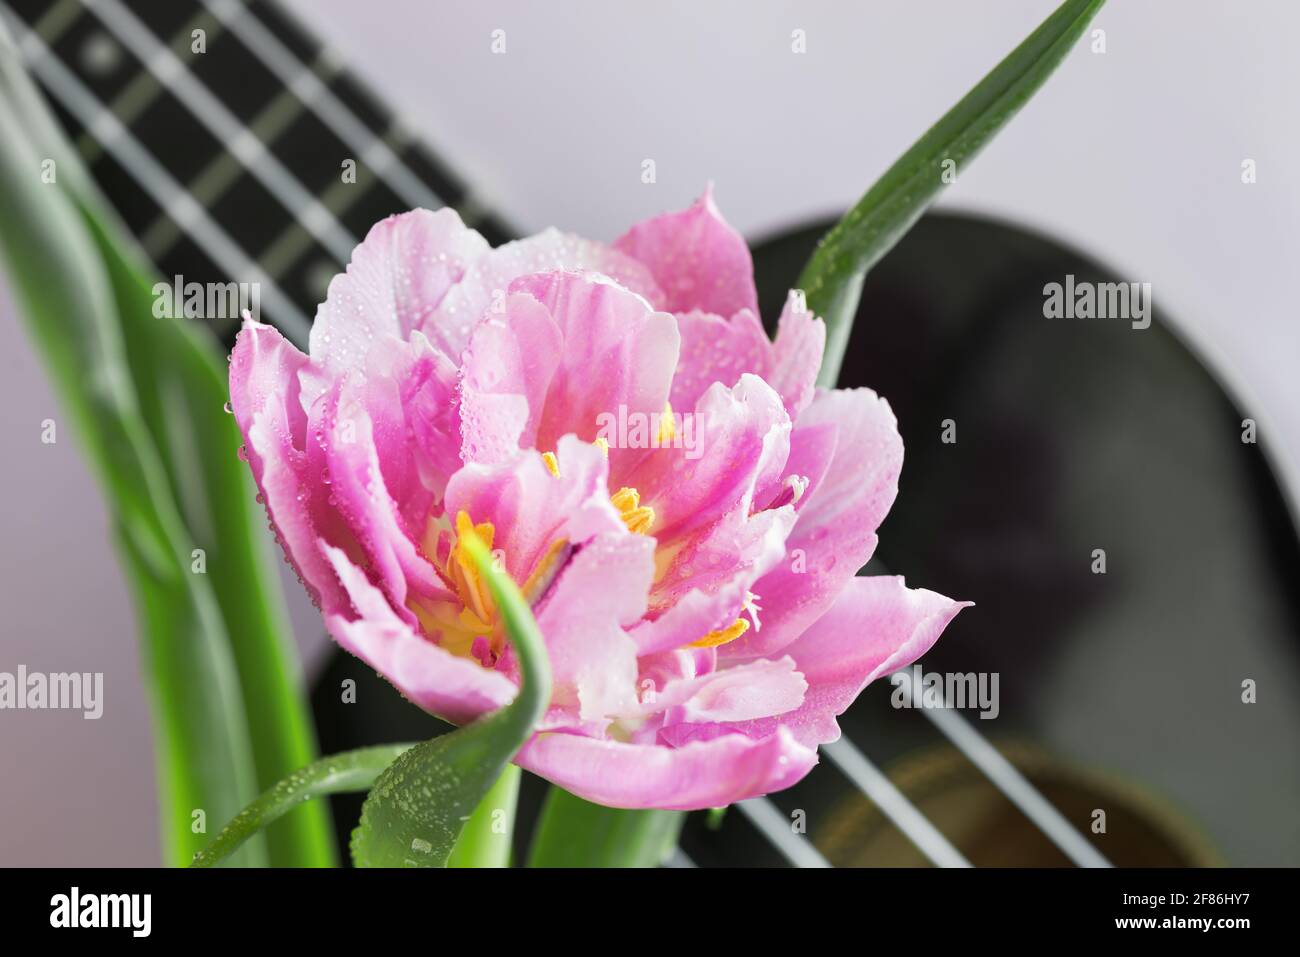 bella tulipano su uno sfondo lilla e un frammento di uno strumento musicale ukulele Foto Stock